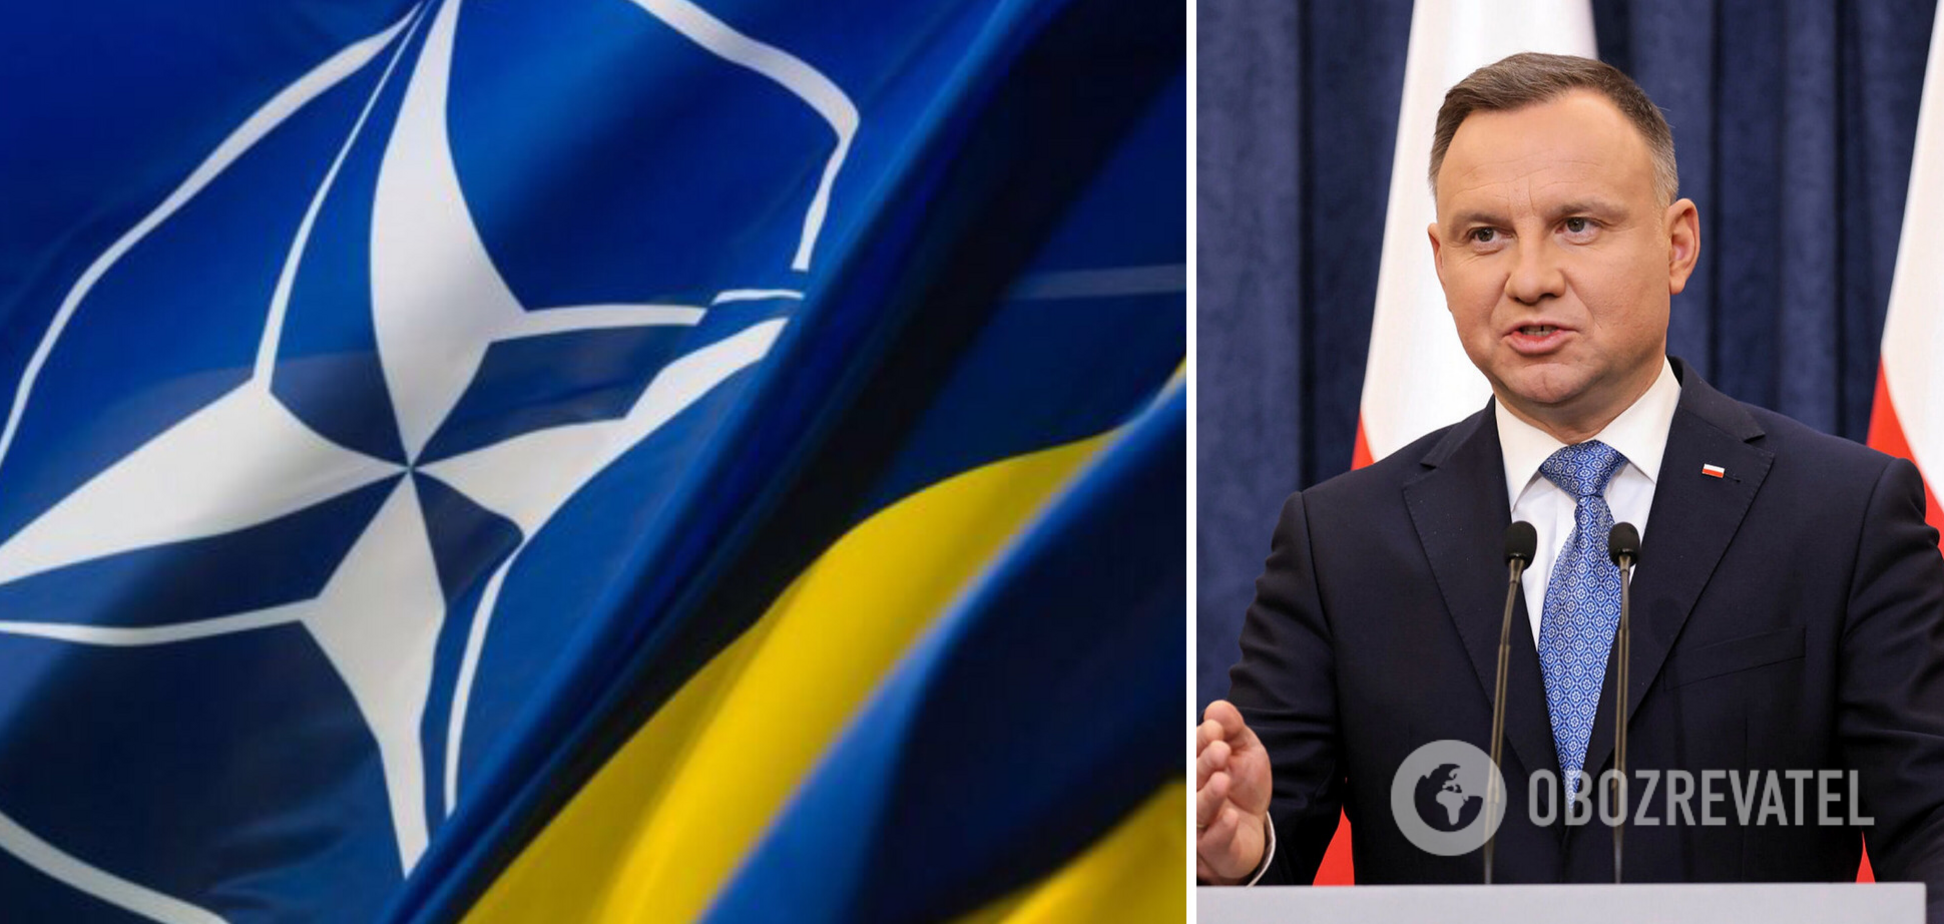 Дуда заявил, что Россия должна сломать зубы об Украину: у нас карт-бланш, никаких обязательств перед РФ нет